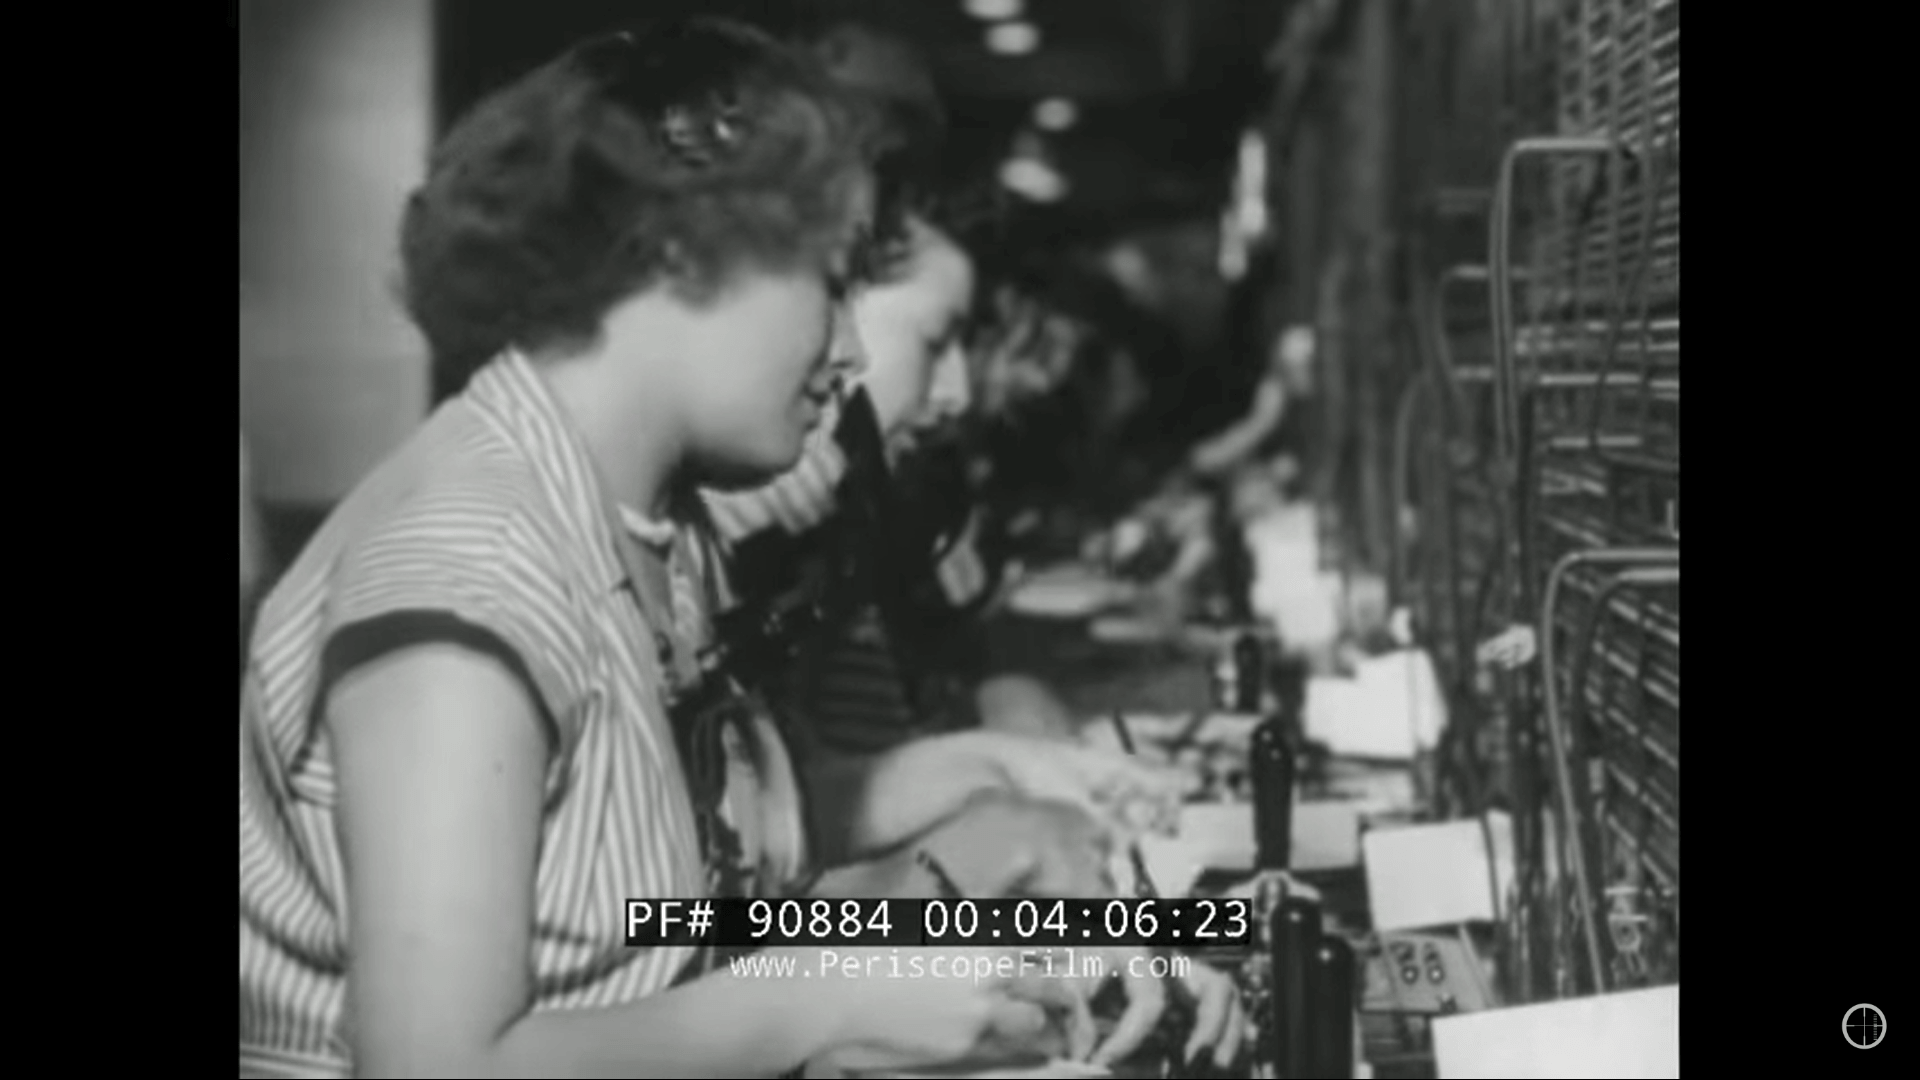 Đoạn video cũ vào nhưng năm 1940 cho thấy gì đã qua về điện thoại di động vào thời điểm đó